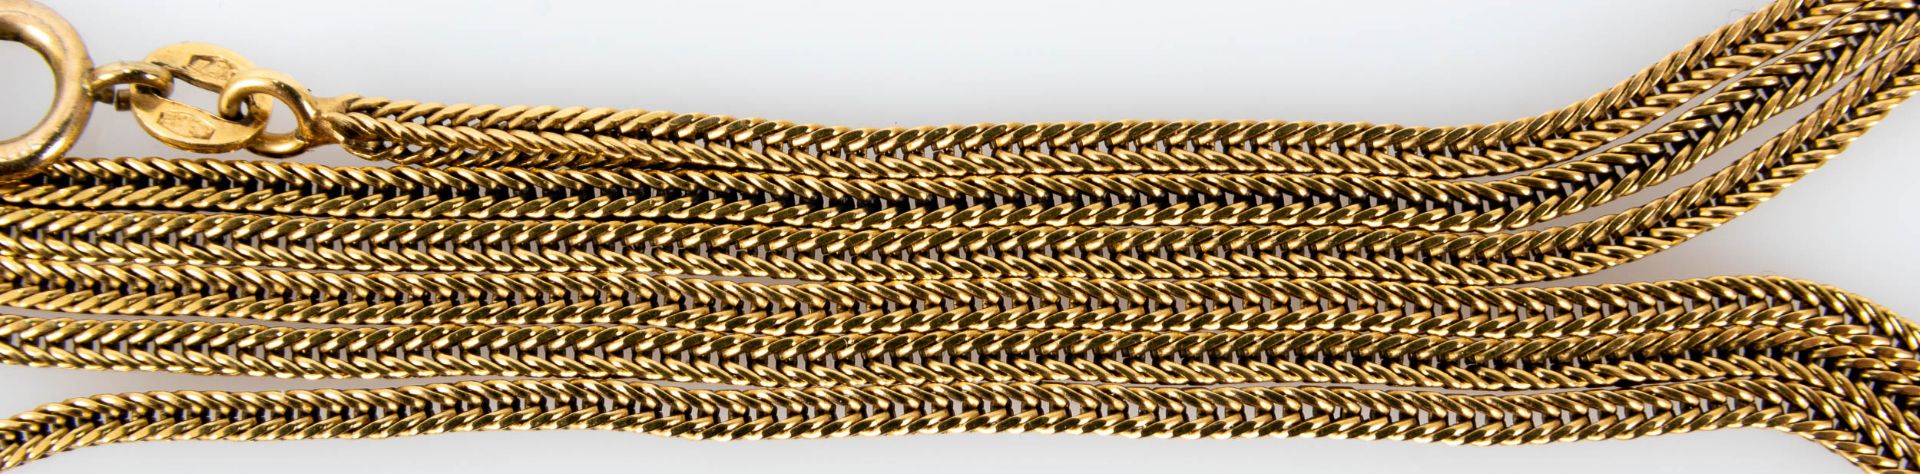 Gelbgold - Kordelkette, 18 kt., ca. 70 cm lang, mit Sicherheitsverschluss. An dieser Kette hing vor - Image 3 of 4